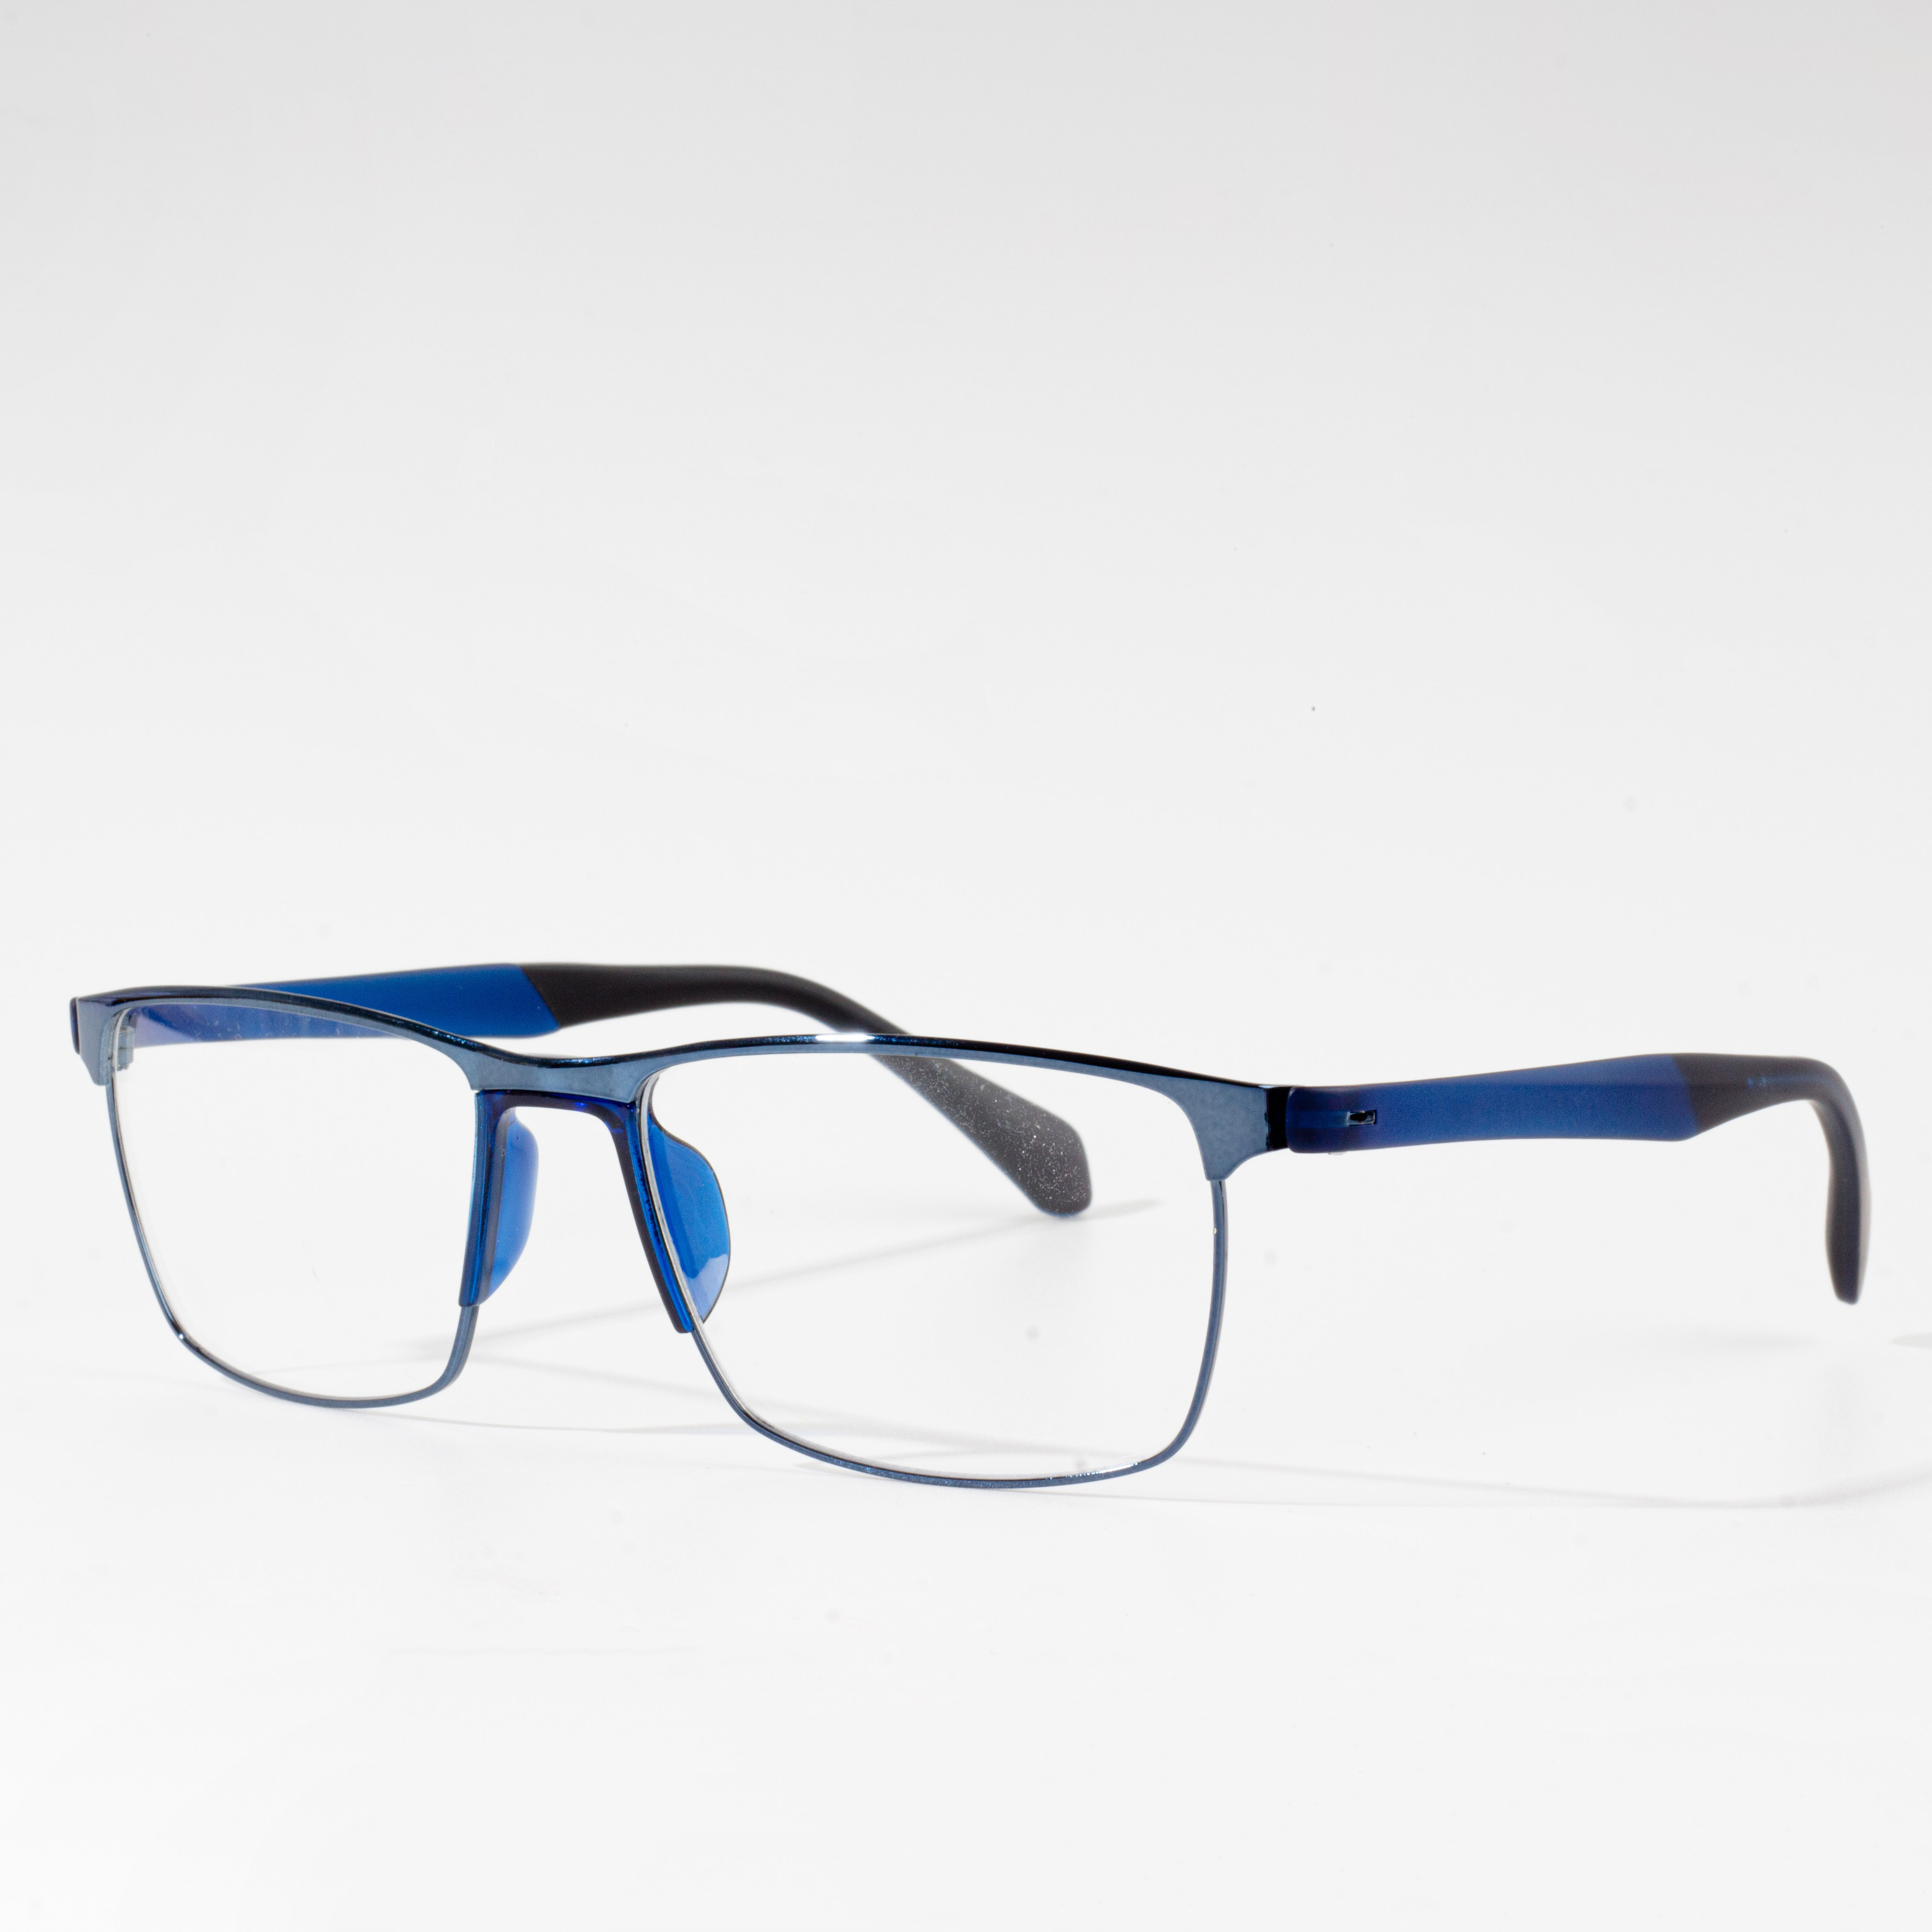 optyske bril tr90 frame